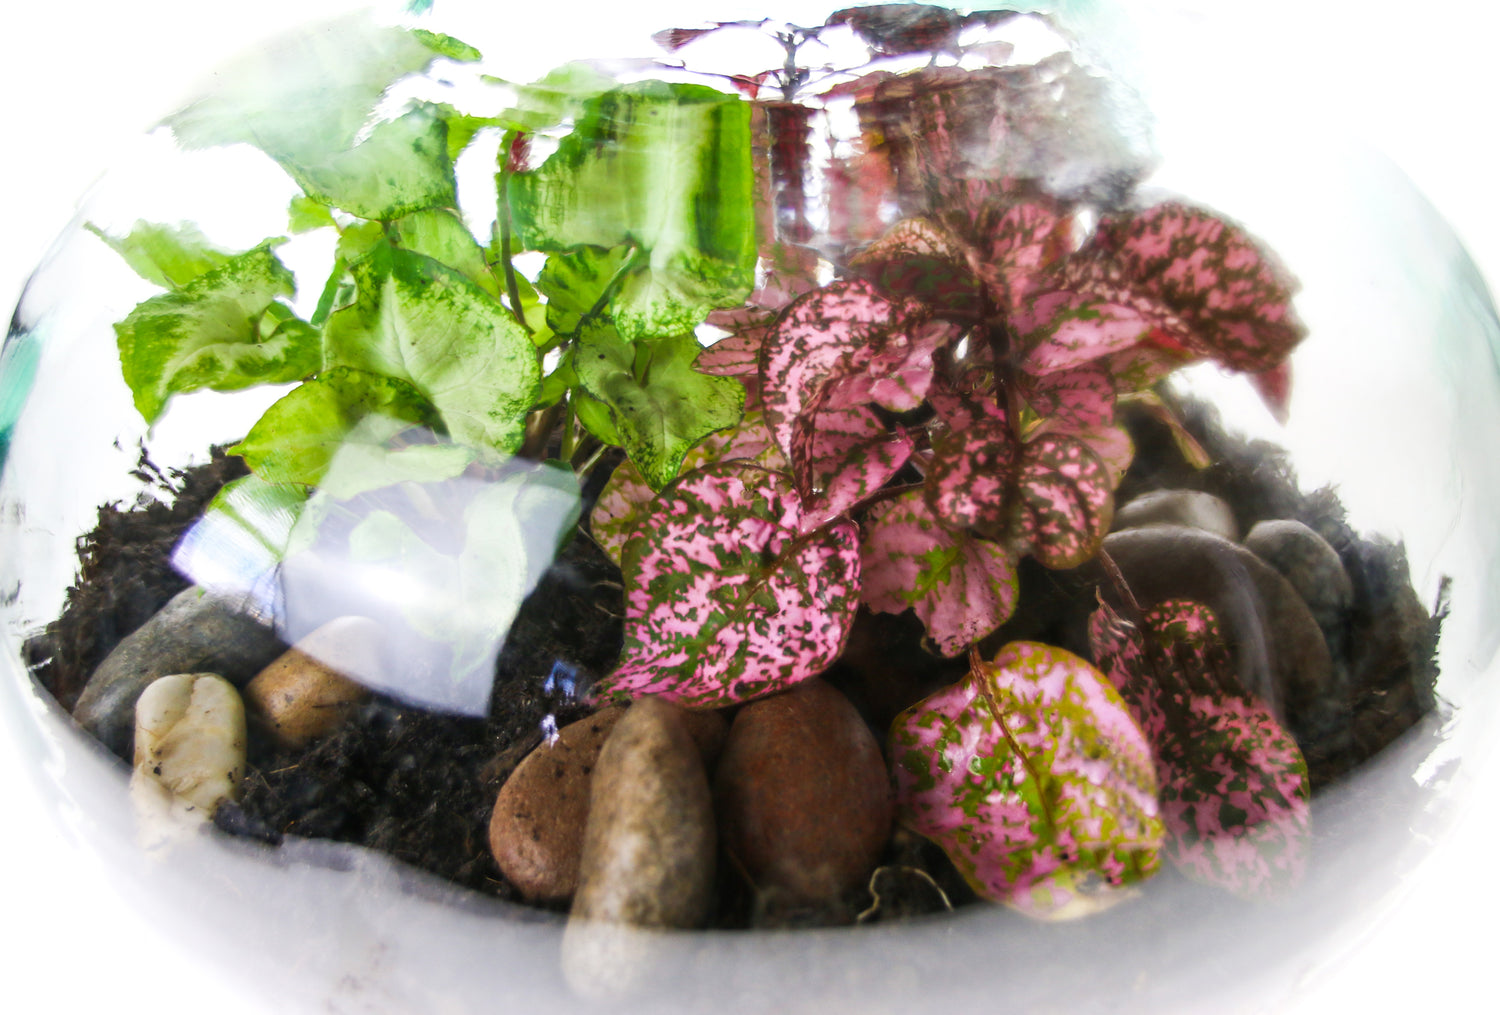 Plants for a bottle terrarium ecosystem